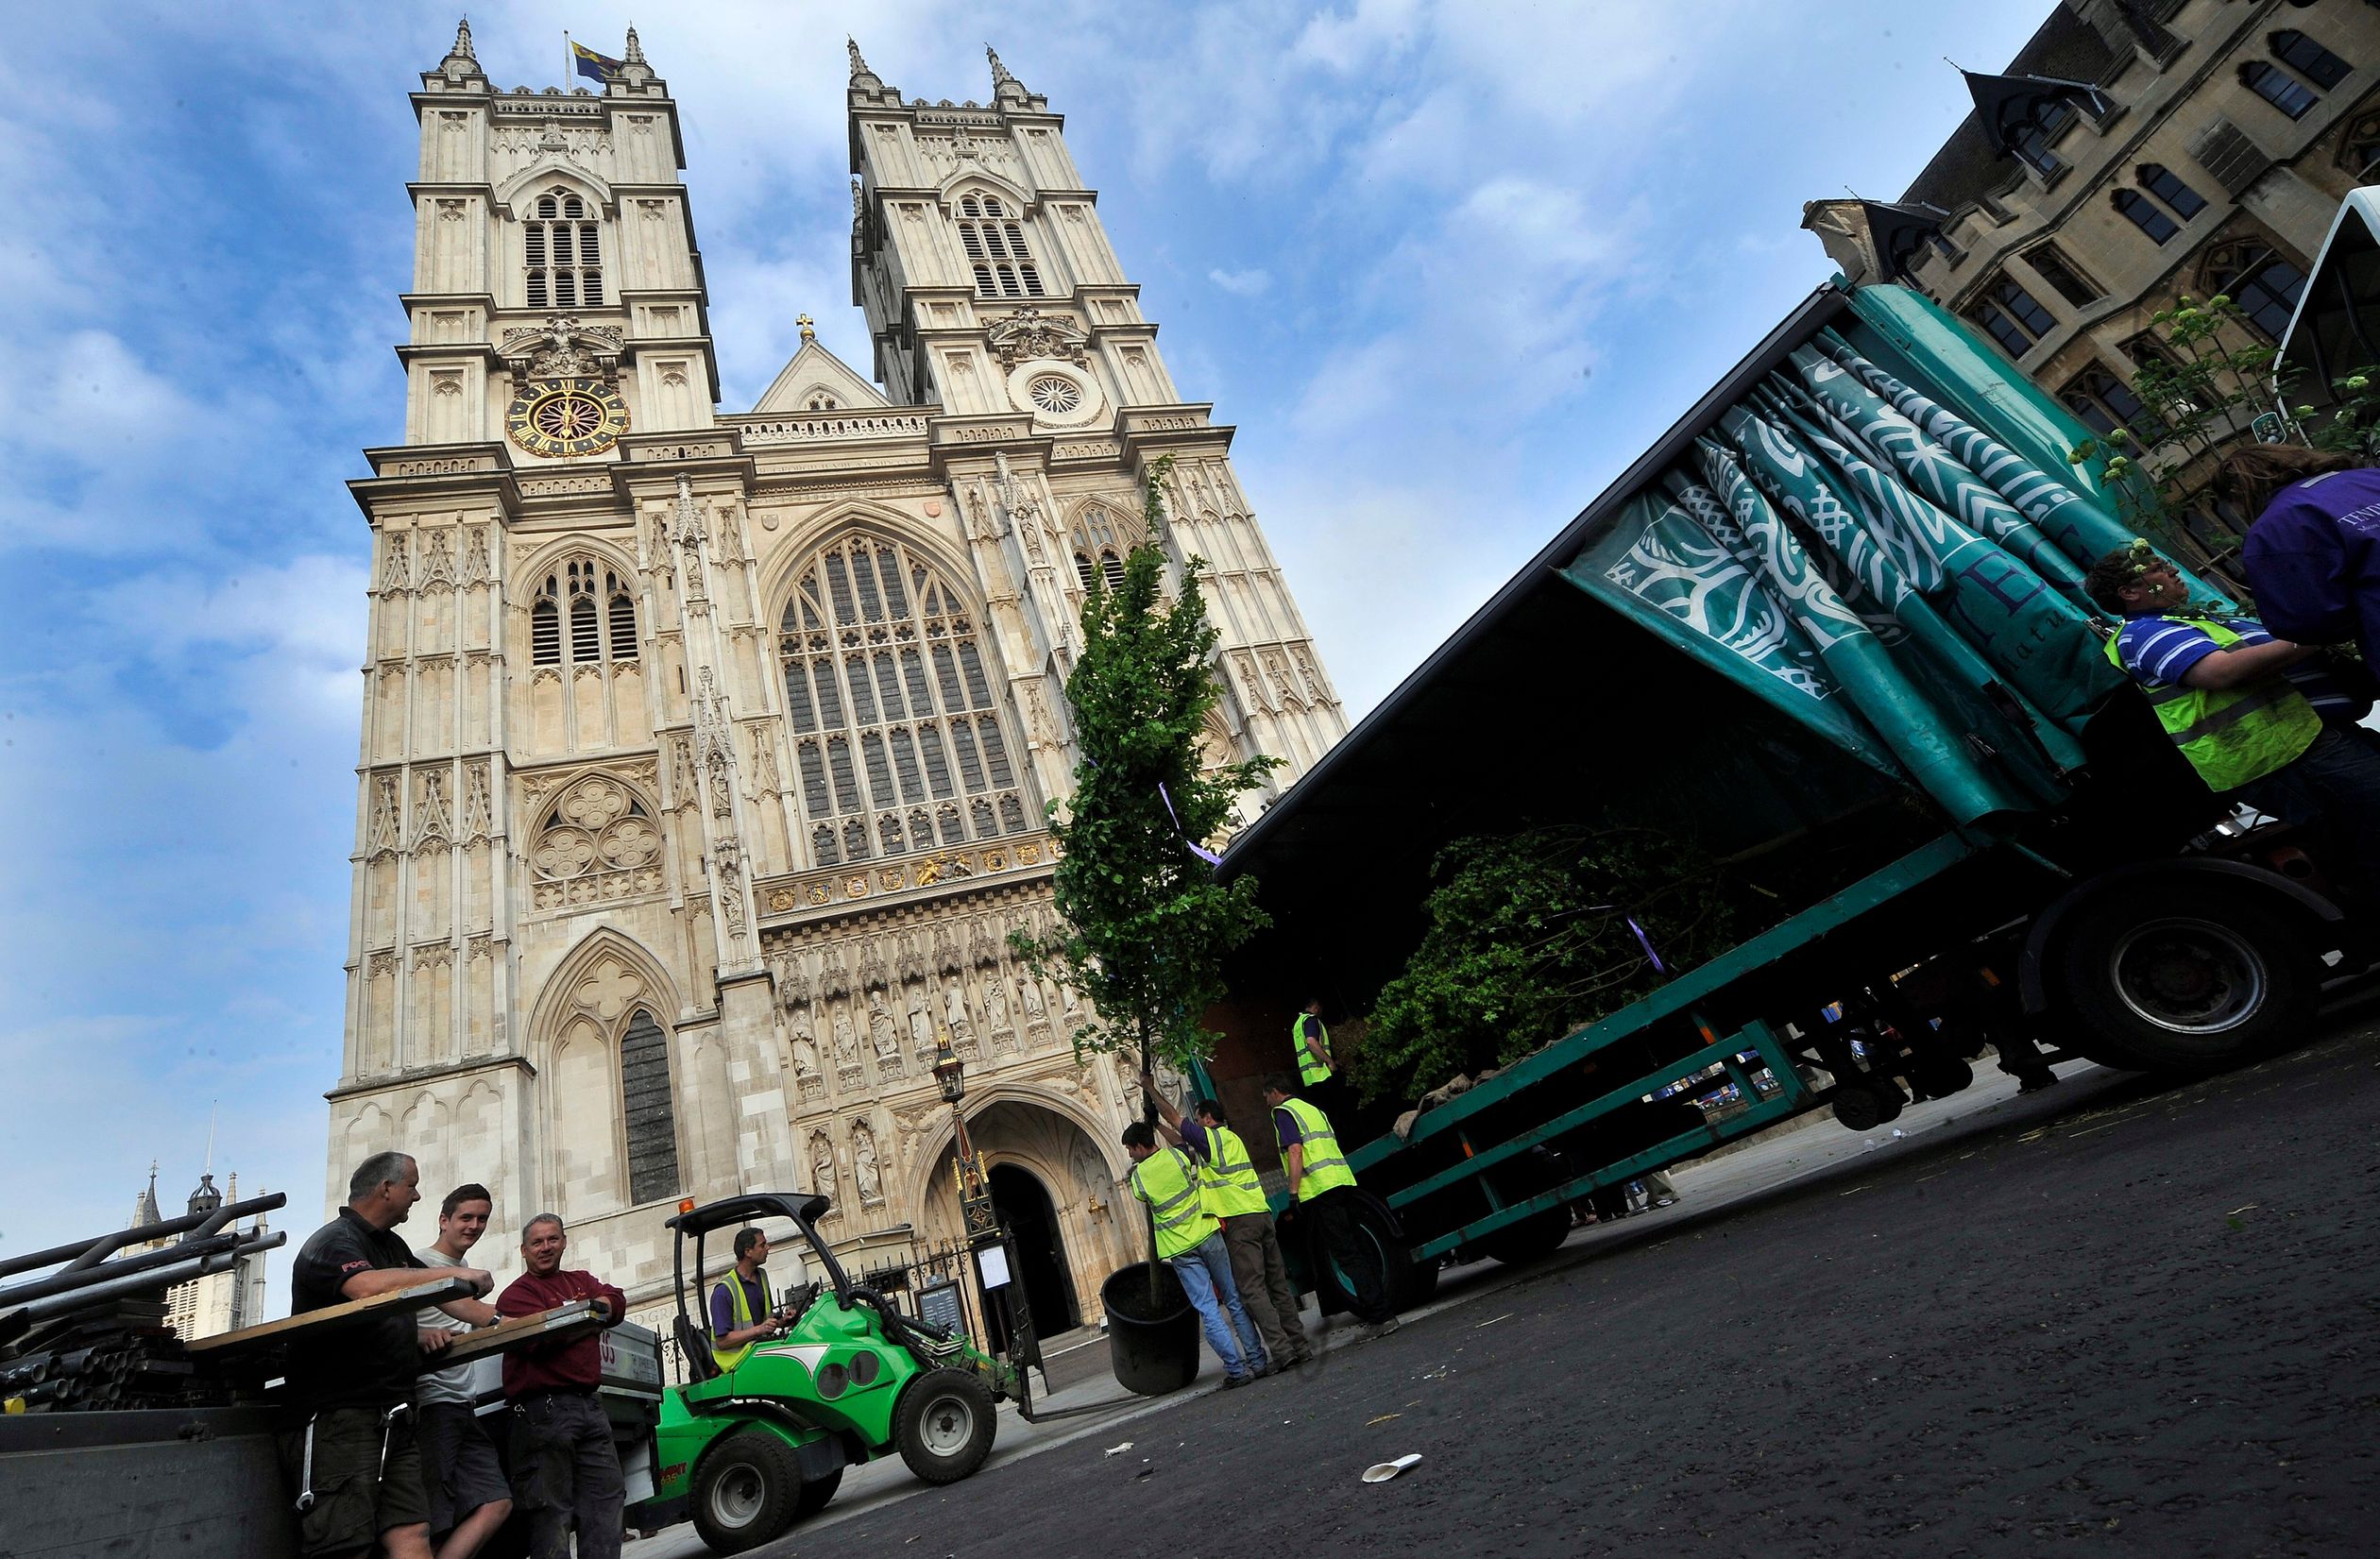 Dé plek waar het allemaal plaatsvond: De Westminster Abbey in Londen.